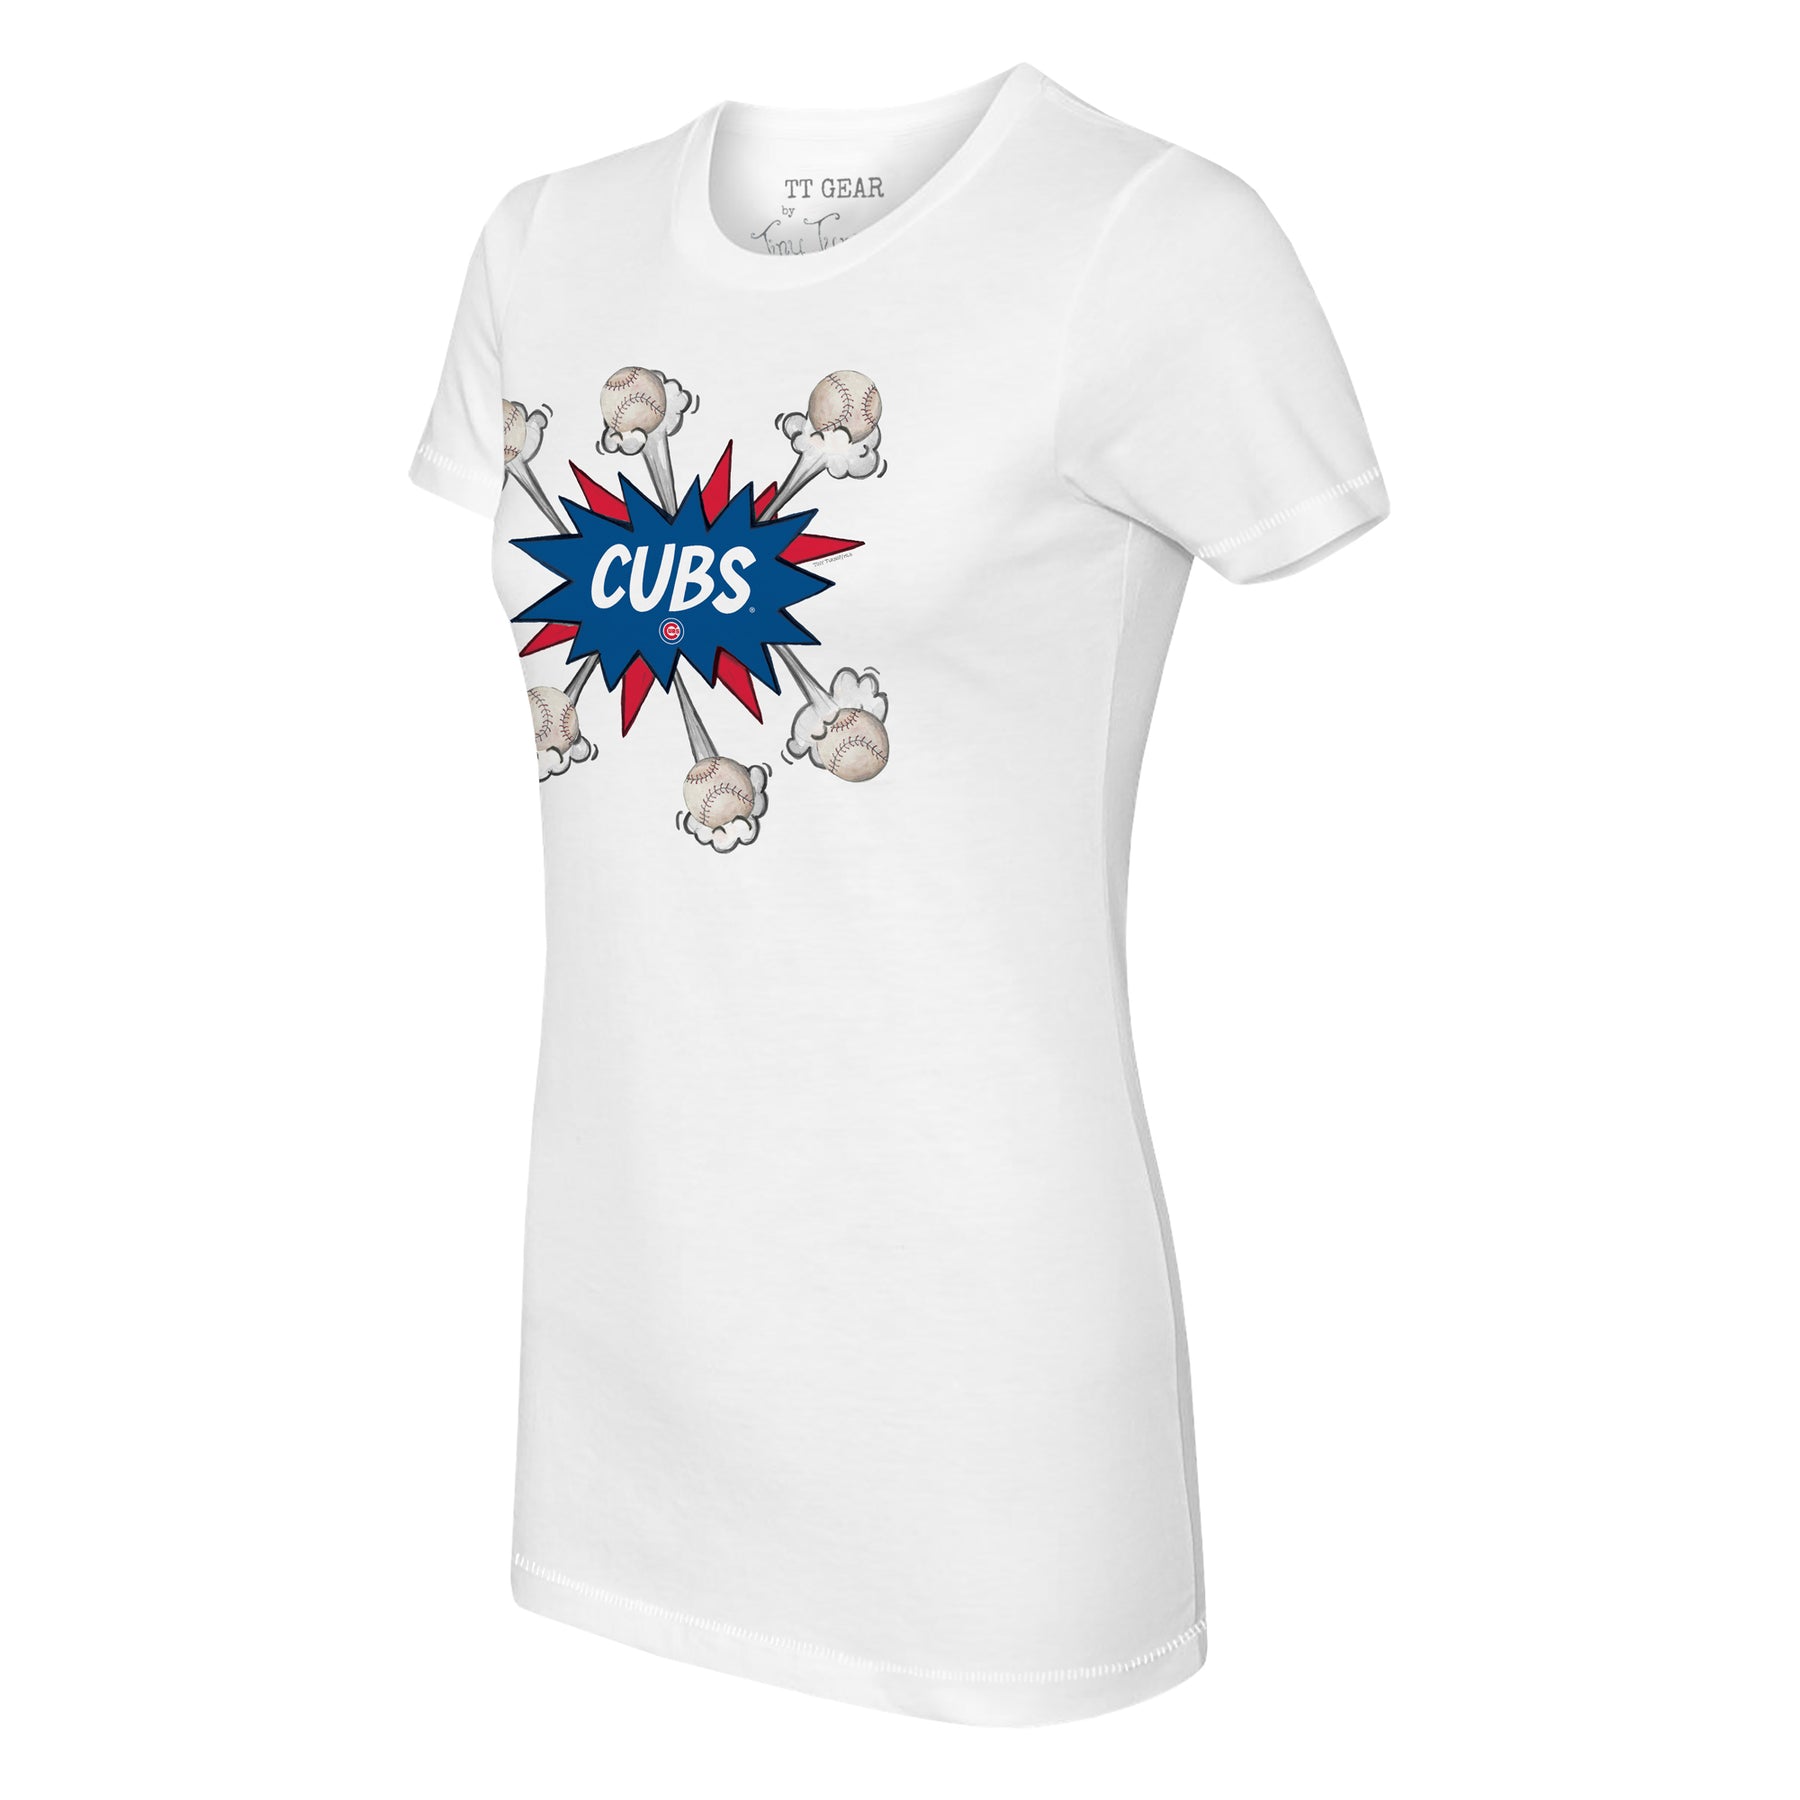 cubs t shirt women's